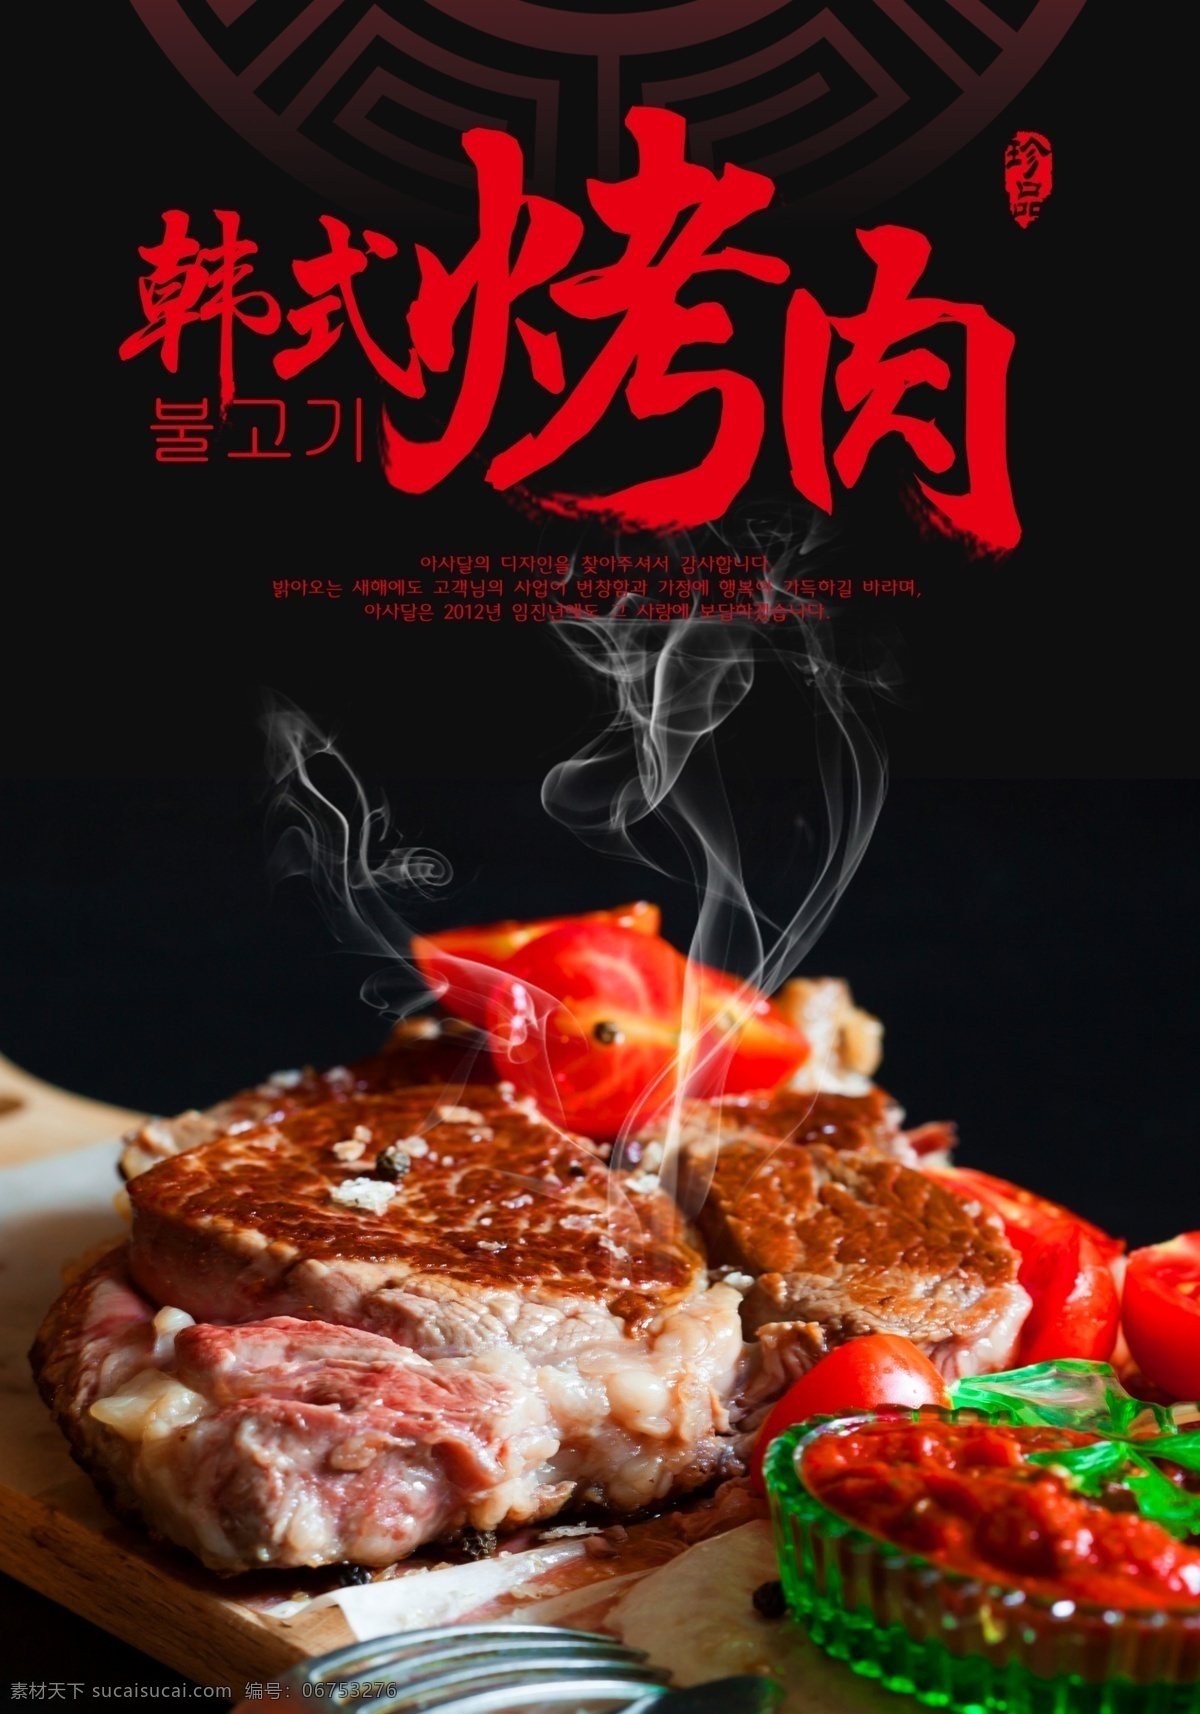 韩式烤肉海报 烧烤 韩式烤肉 蔬菜烧烤 自助烧烤 餐饮海报 烧烤海报 海报类单页类